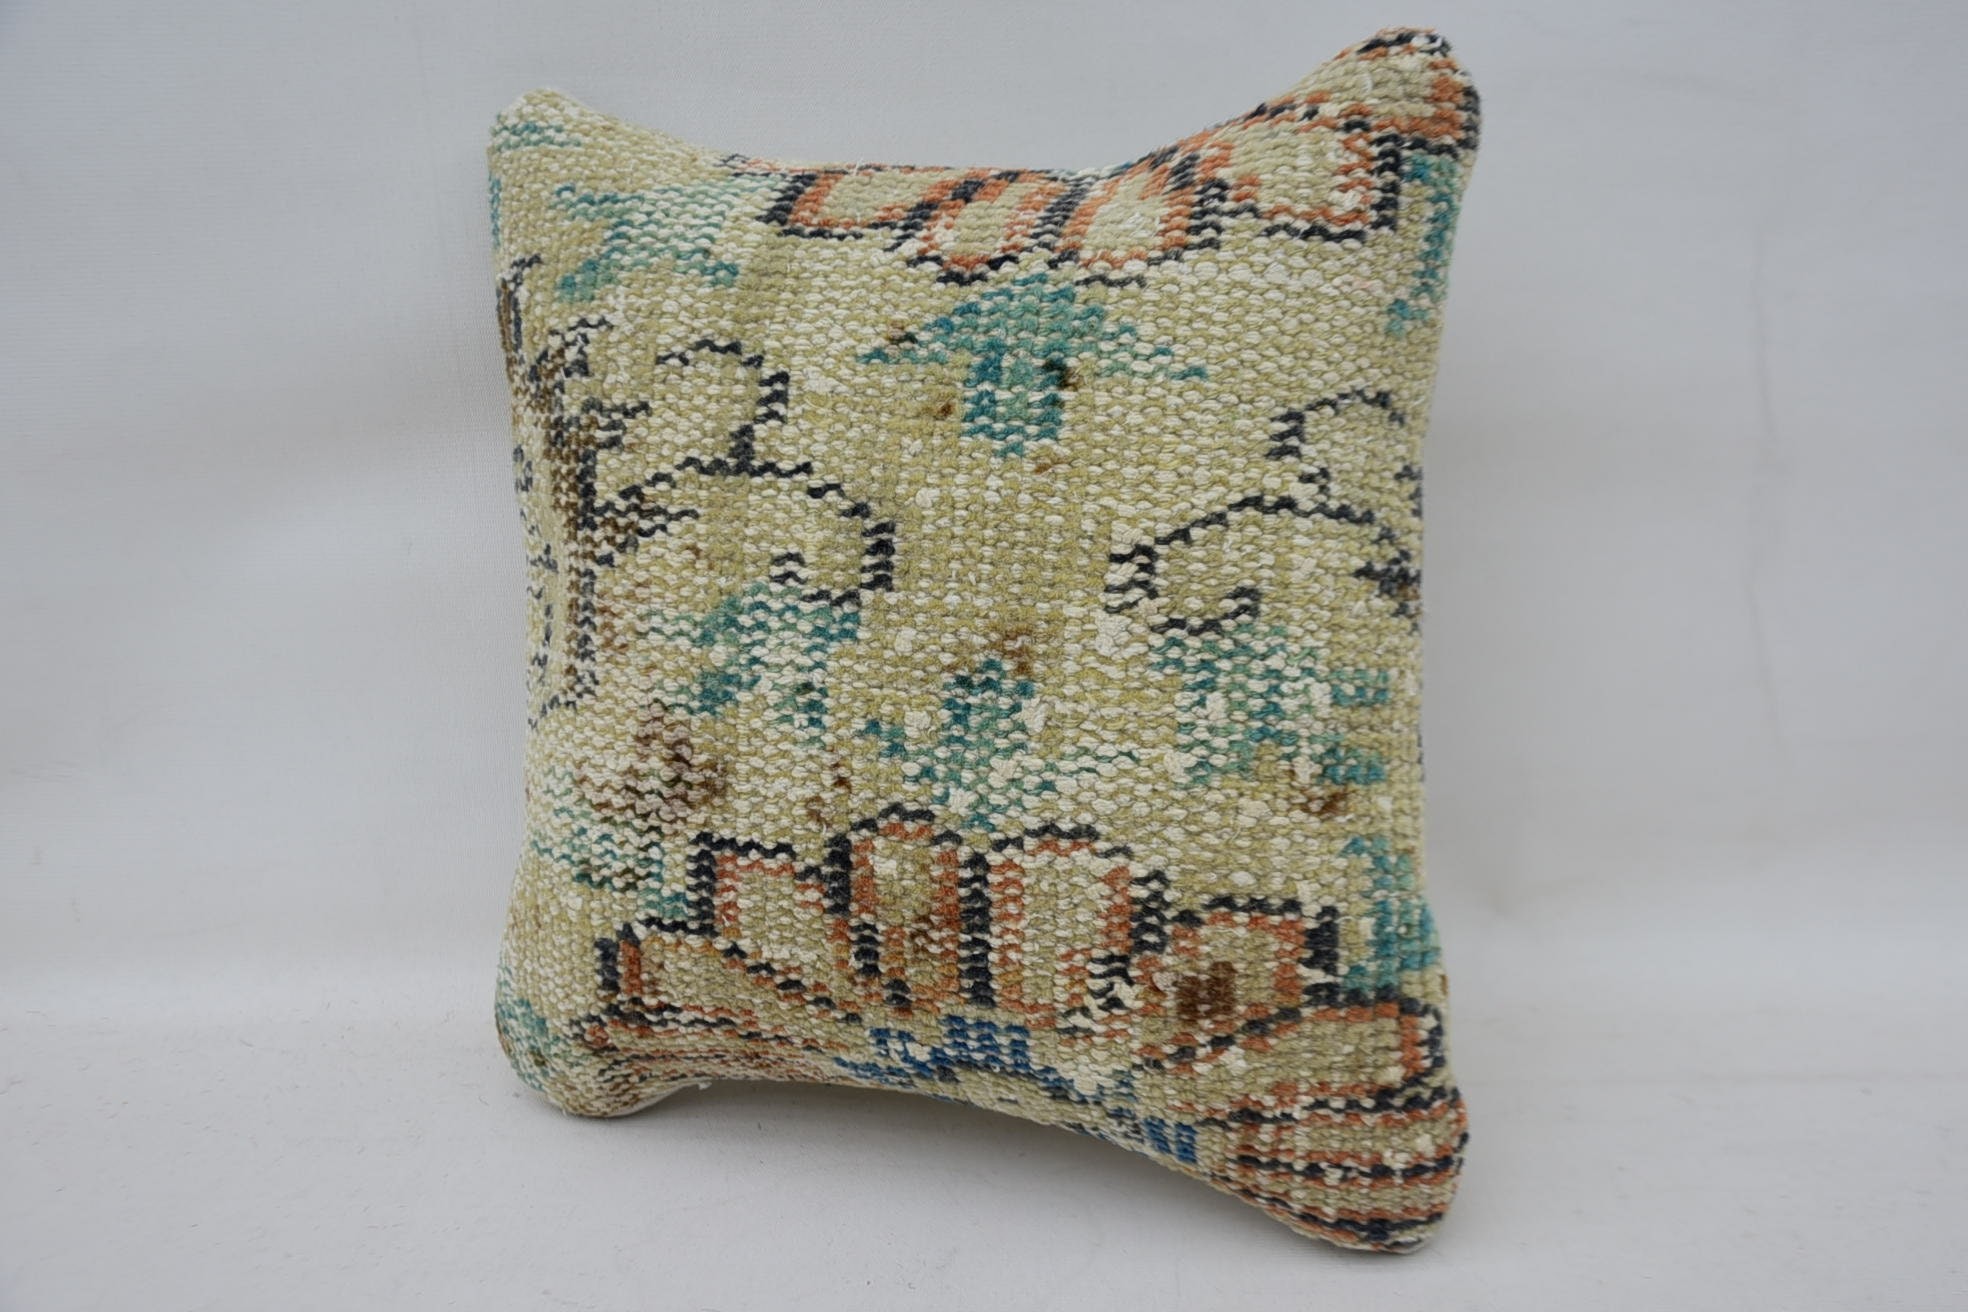 Turkish Kilim Pillow, Gift Pillow, Outdoor Patio Pillow Case, Vintage Kilim Throw Pillow, 12"x12" Beige Cushion, Boho Throw Cushion